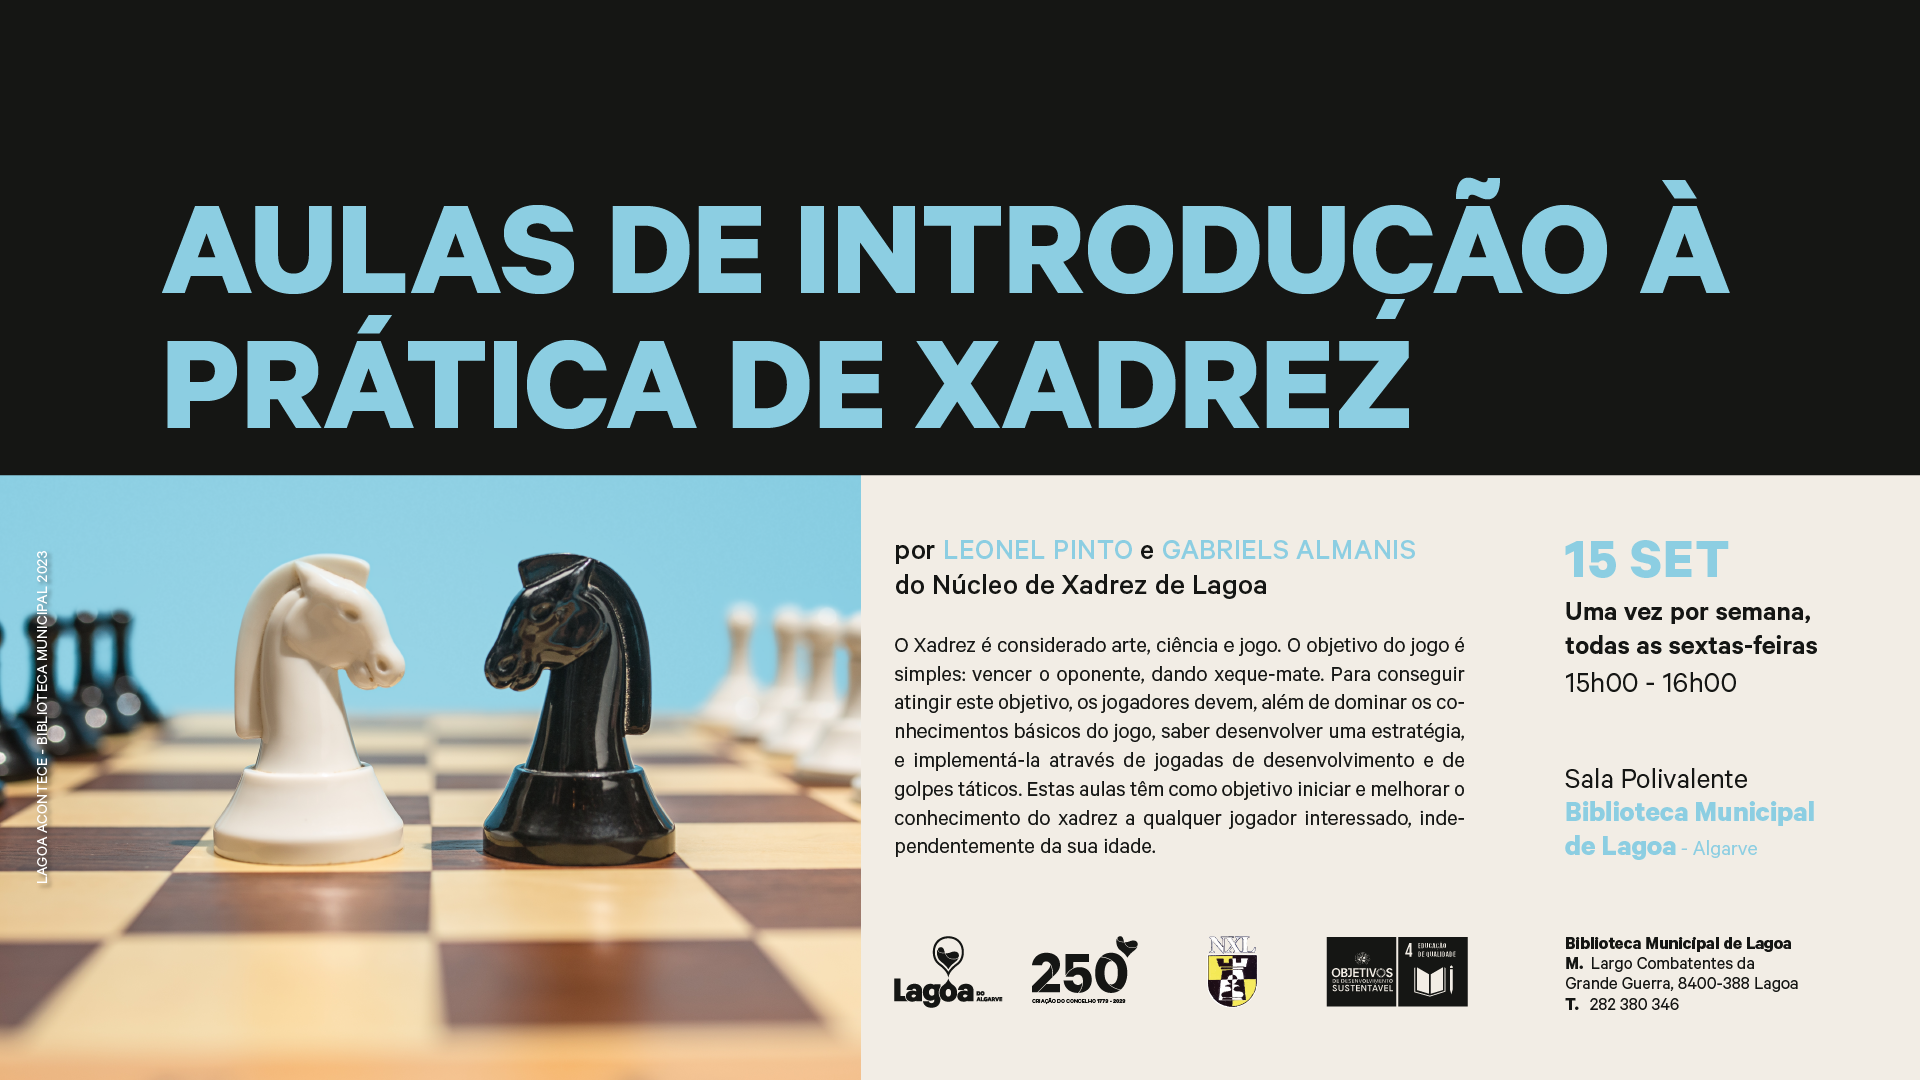 Aulas de introdução à prática de Xadrez